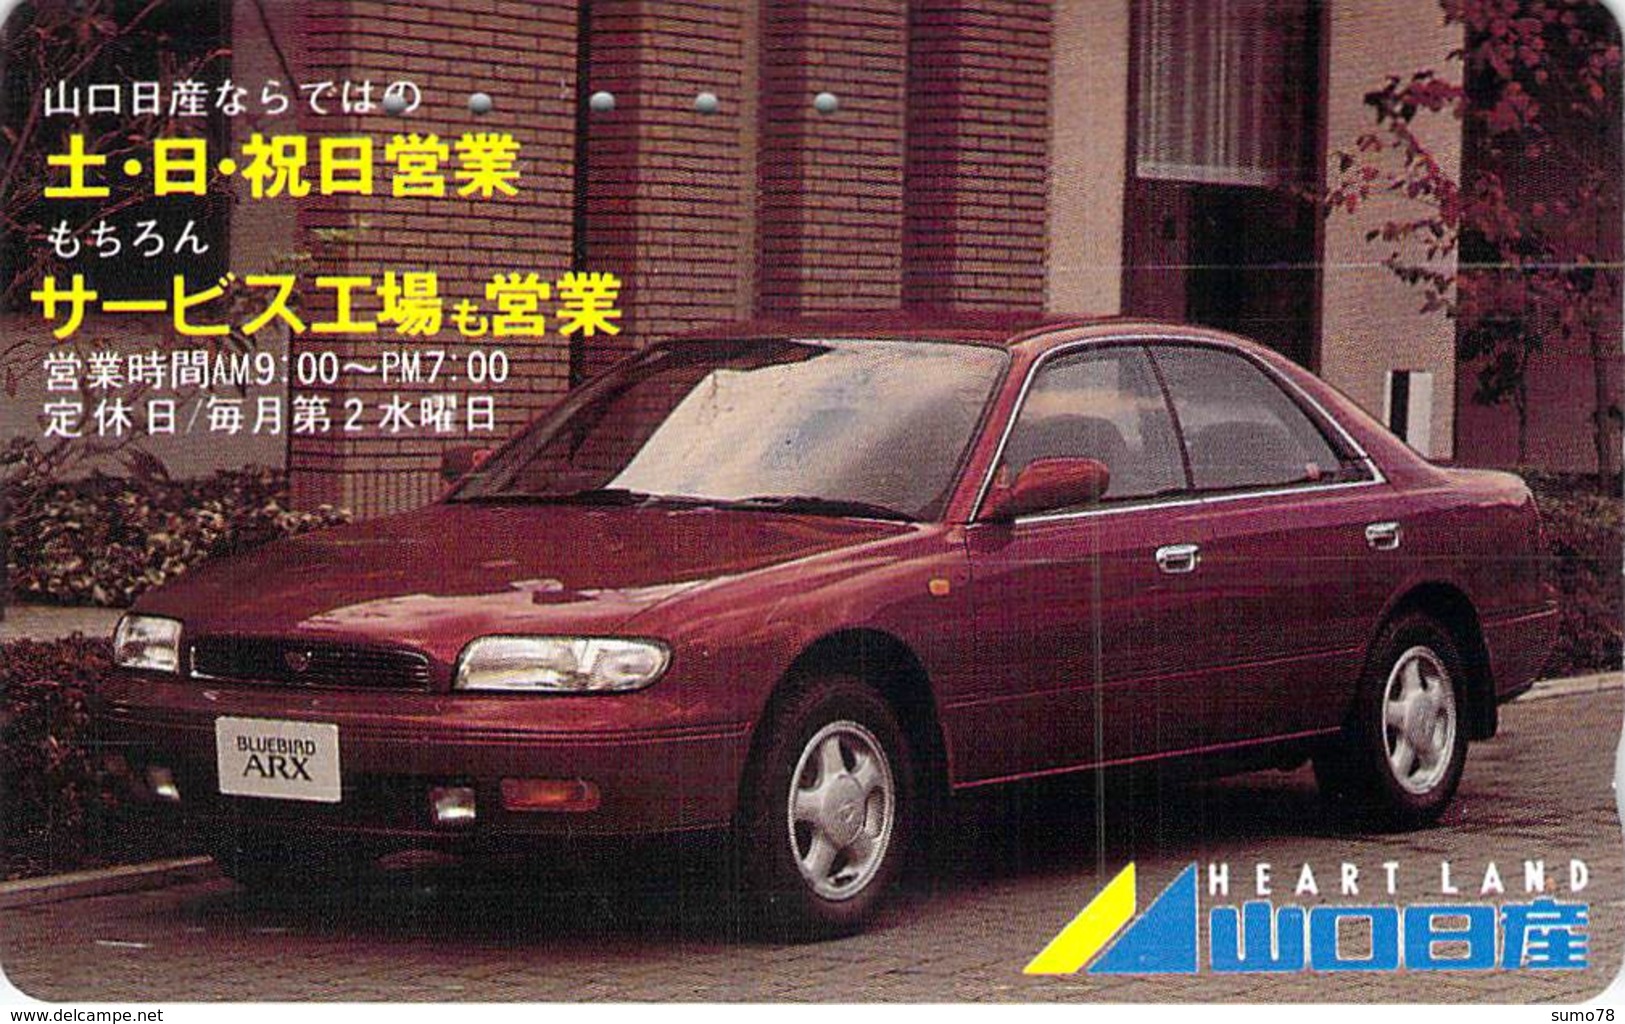 NISSAN - AUTO  - VOITURE - AUTOMOBILE - CAR -- TELECARTE JAPON - Voitures